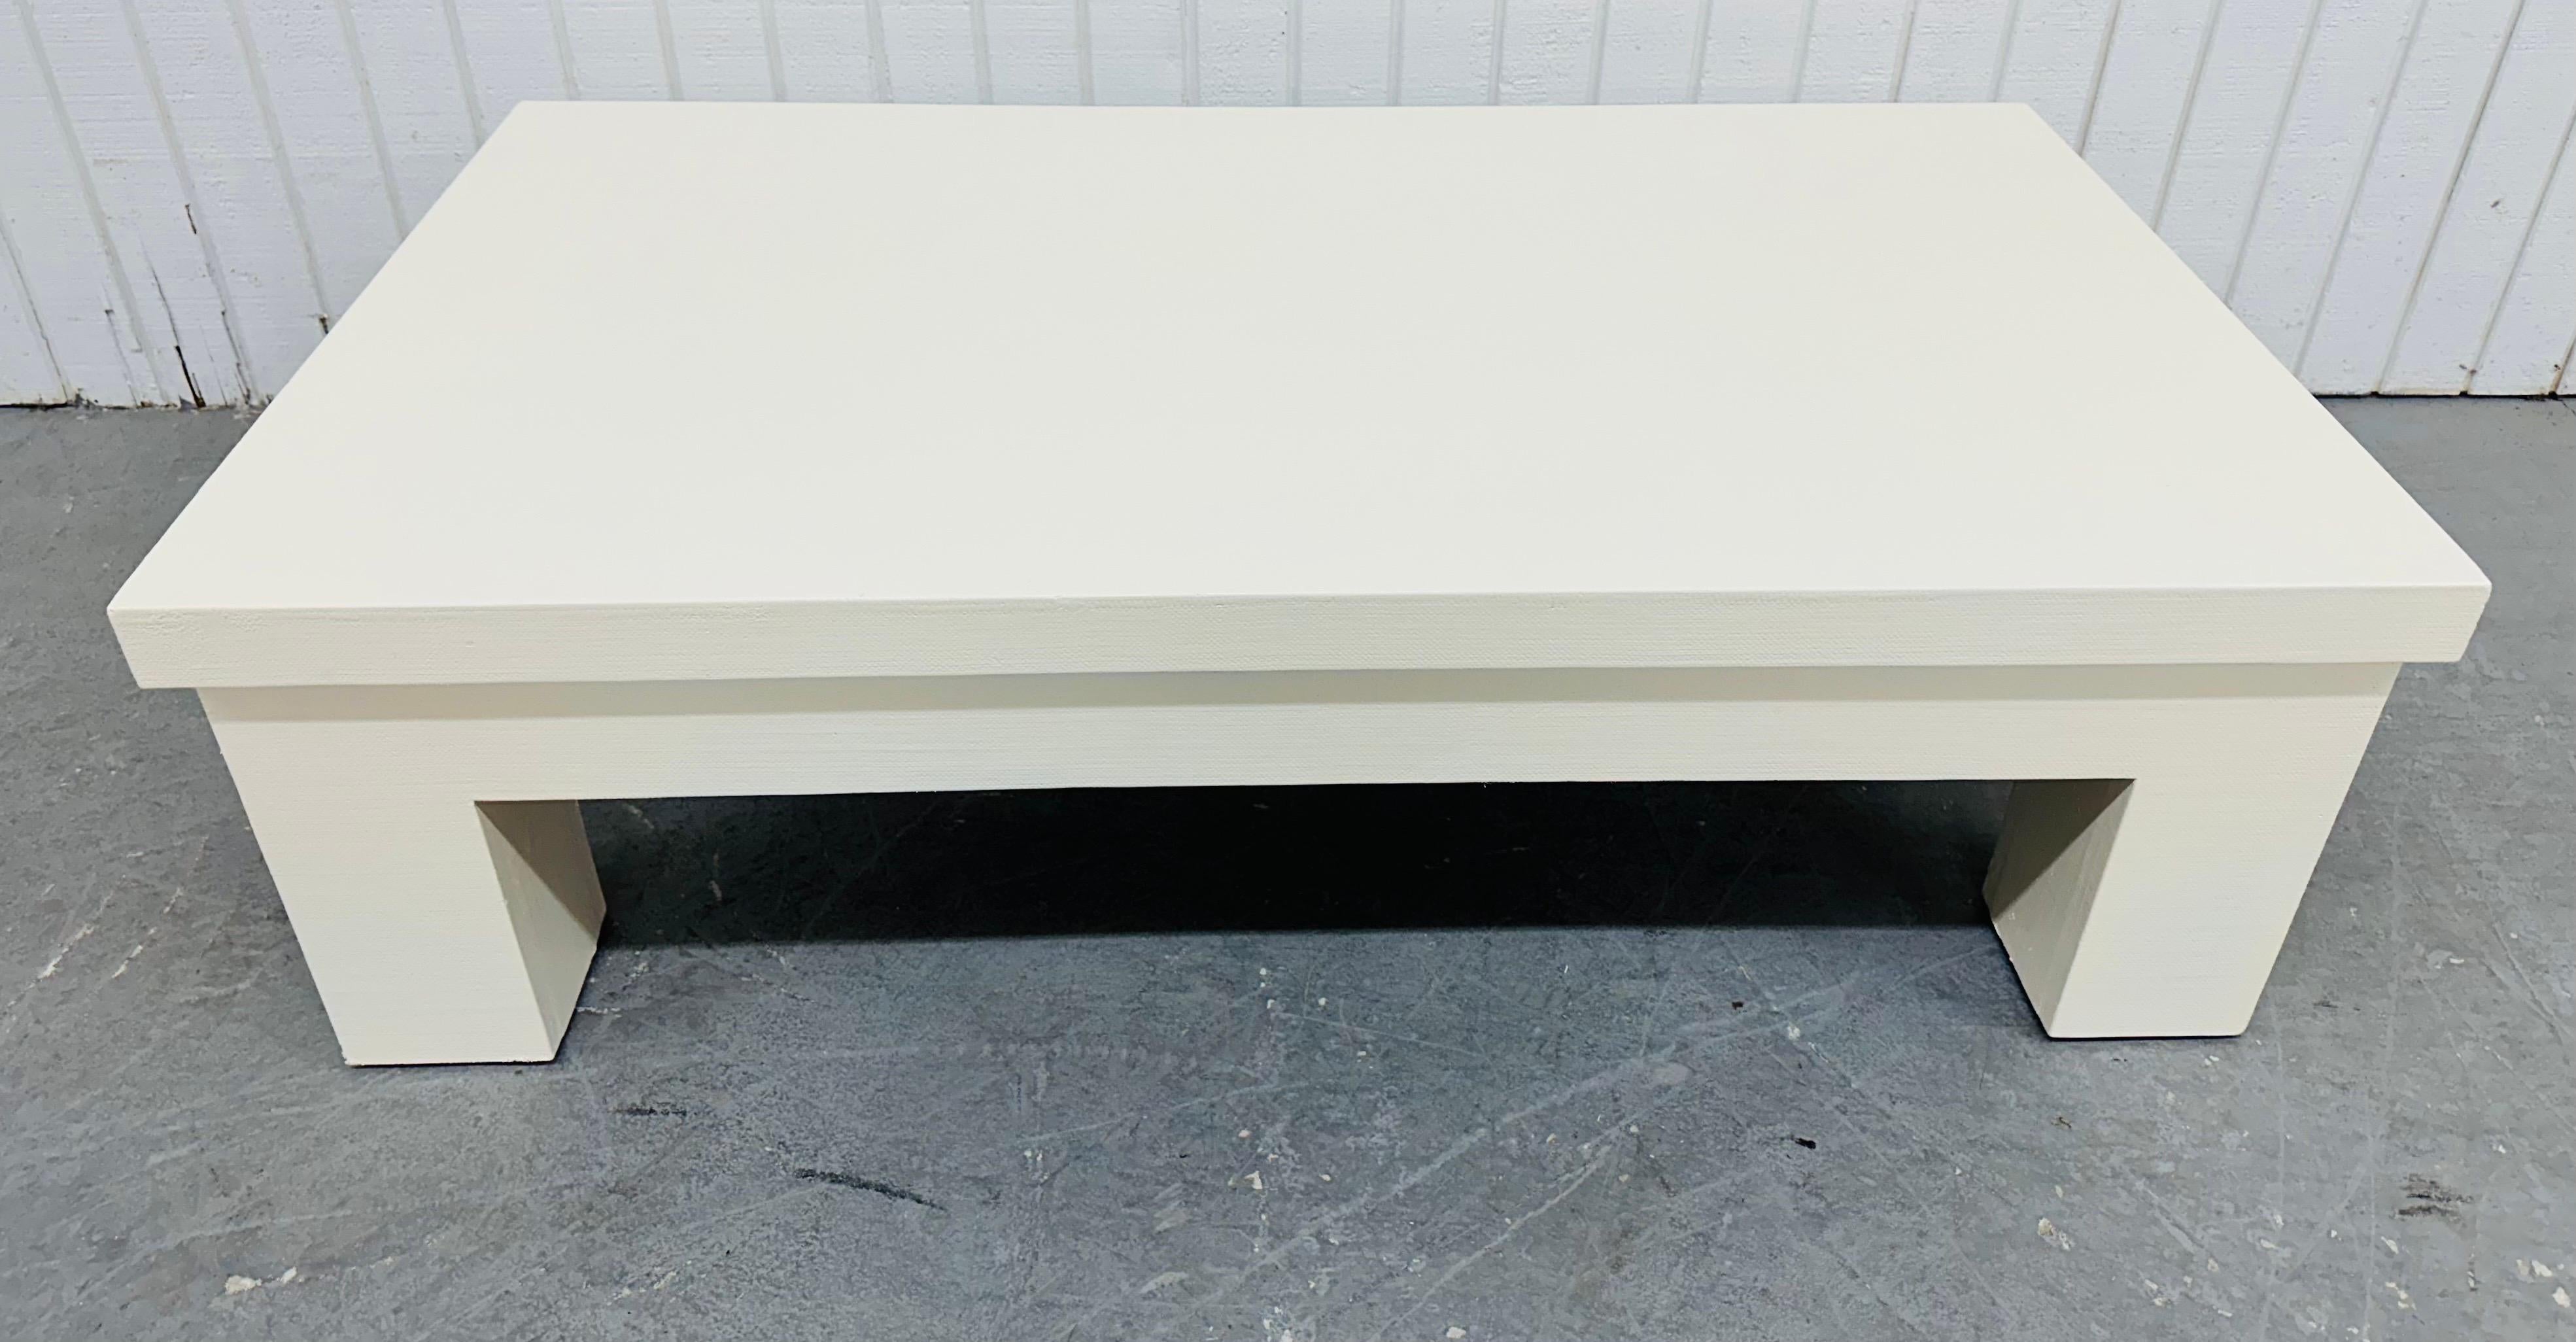 Cette annonce concerne une table basse post-moderne de style Karl Springer. Whiting avec un design aux lignes droites, un plateau rectangulaire, des pieds épais et modernes, enveloppés de lin avec une finition blanc cassé. Il s'agit d'une